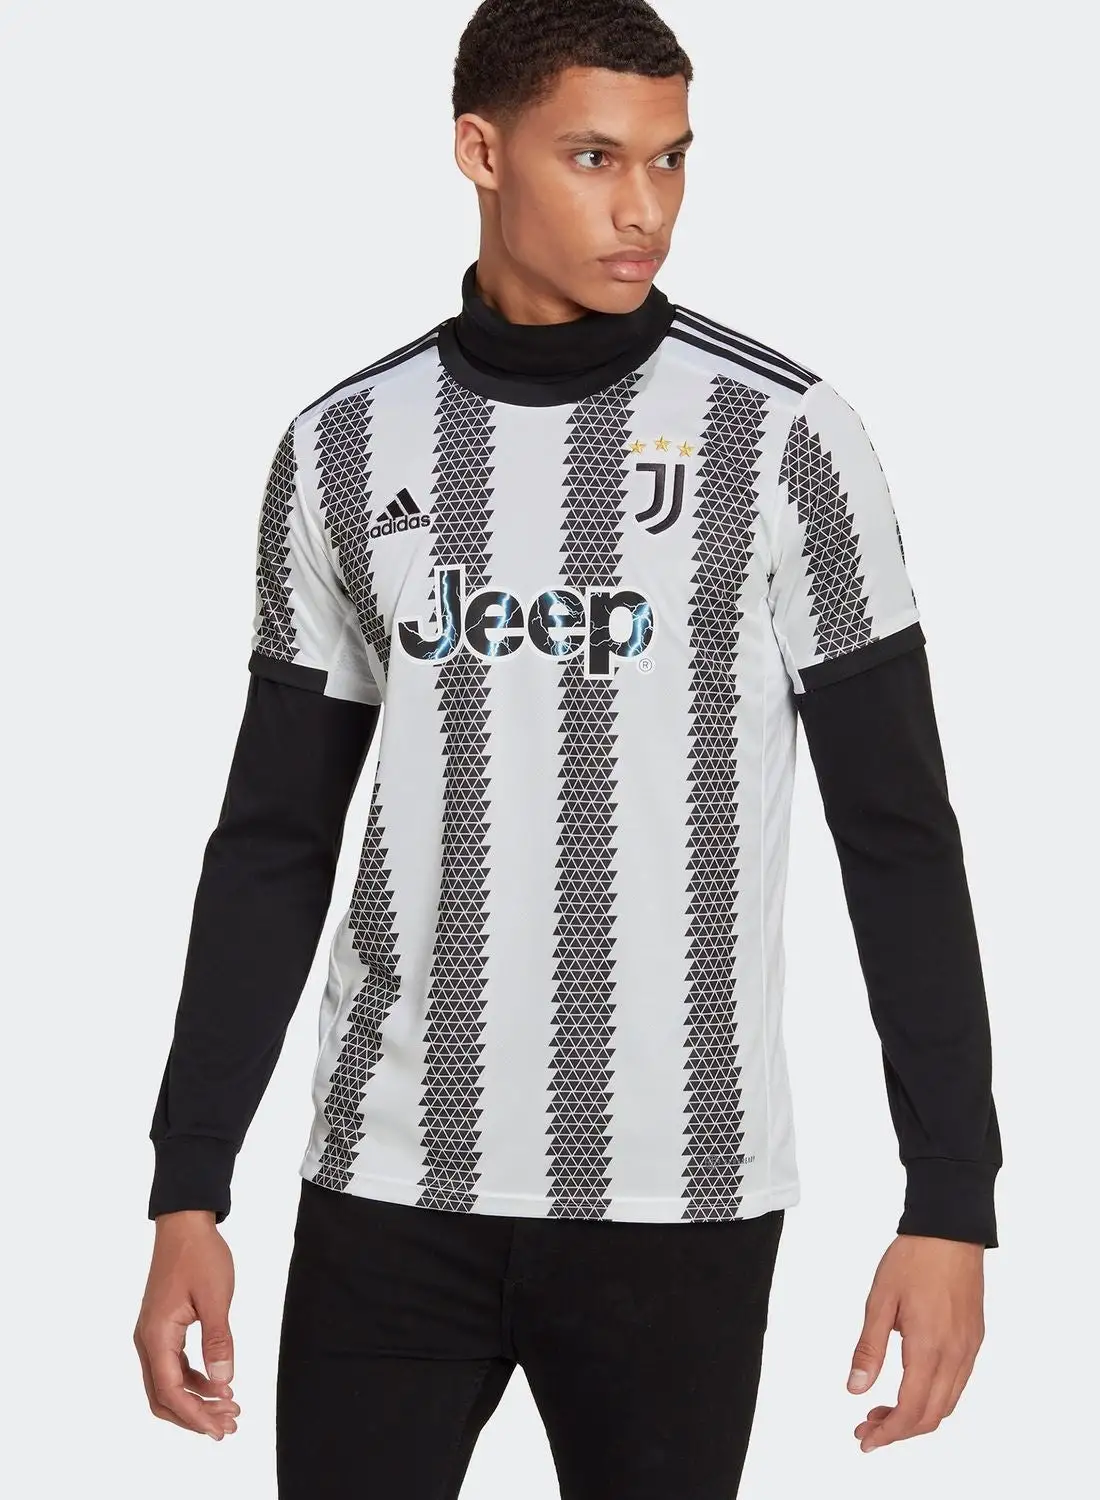 Adidas Juventus Home Jersey